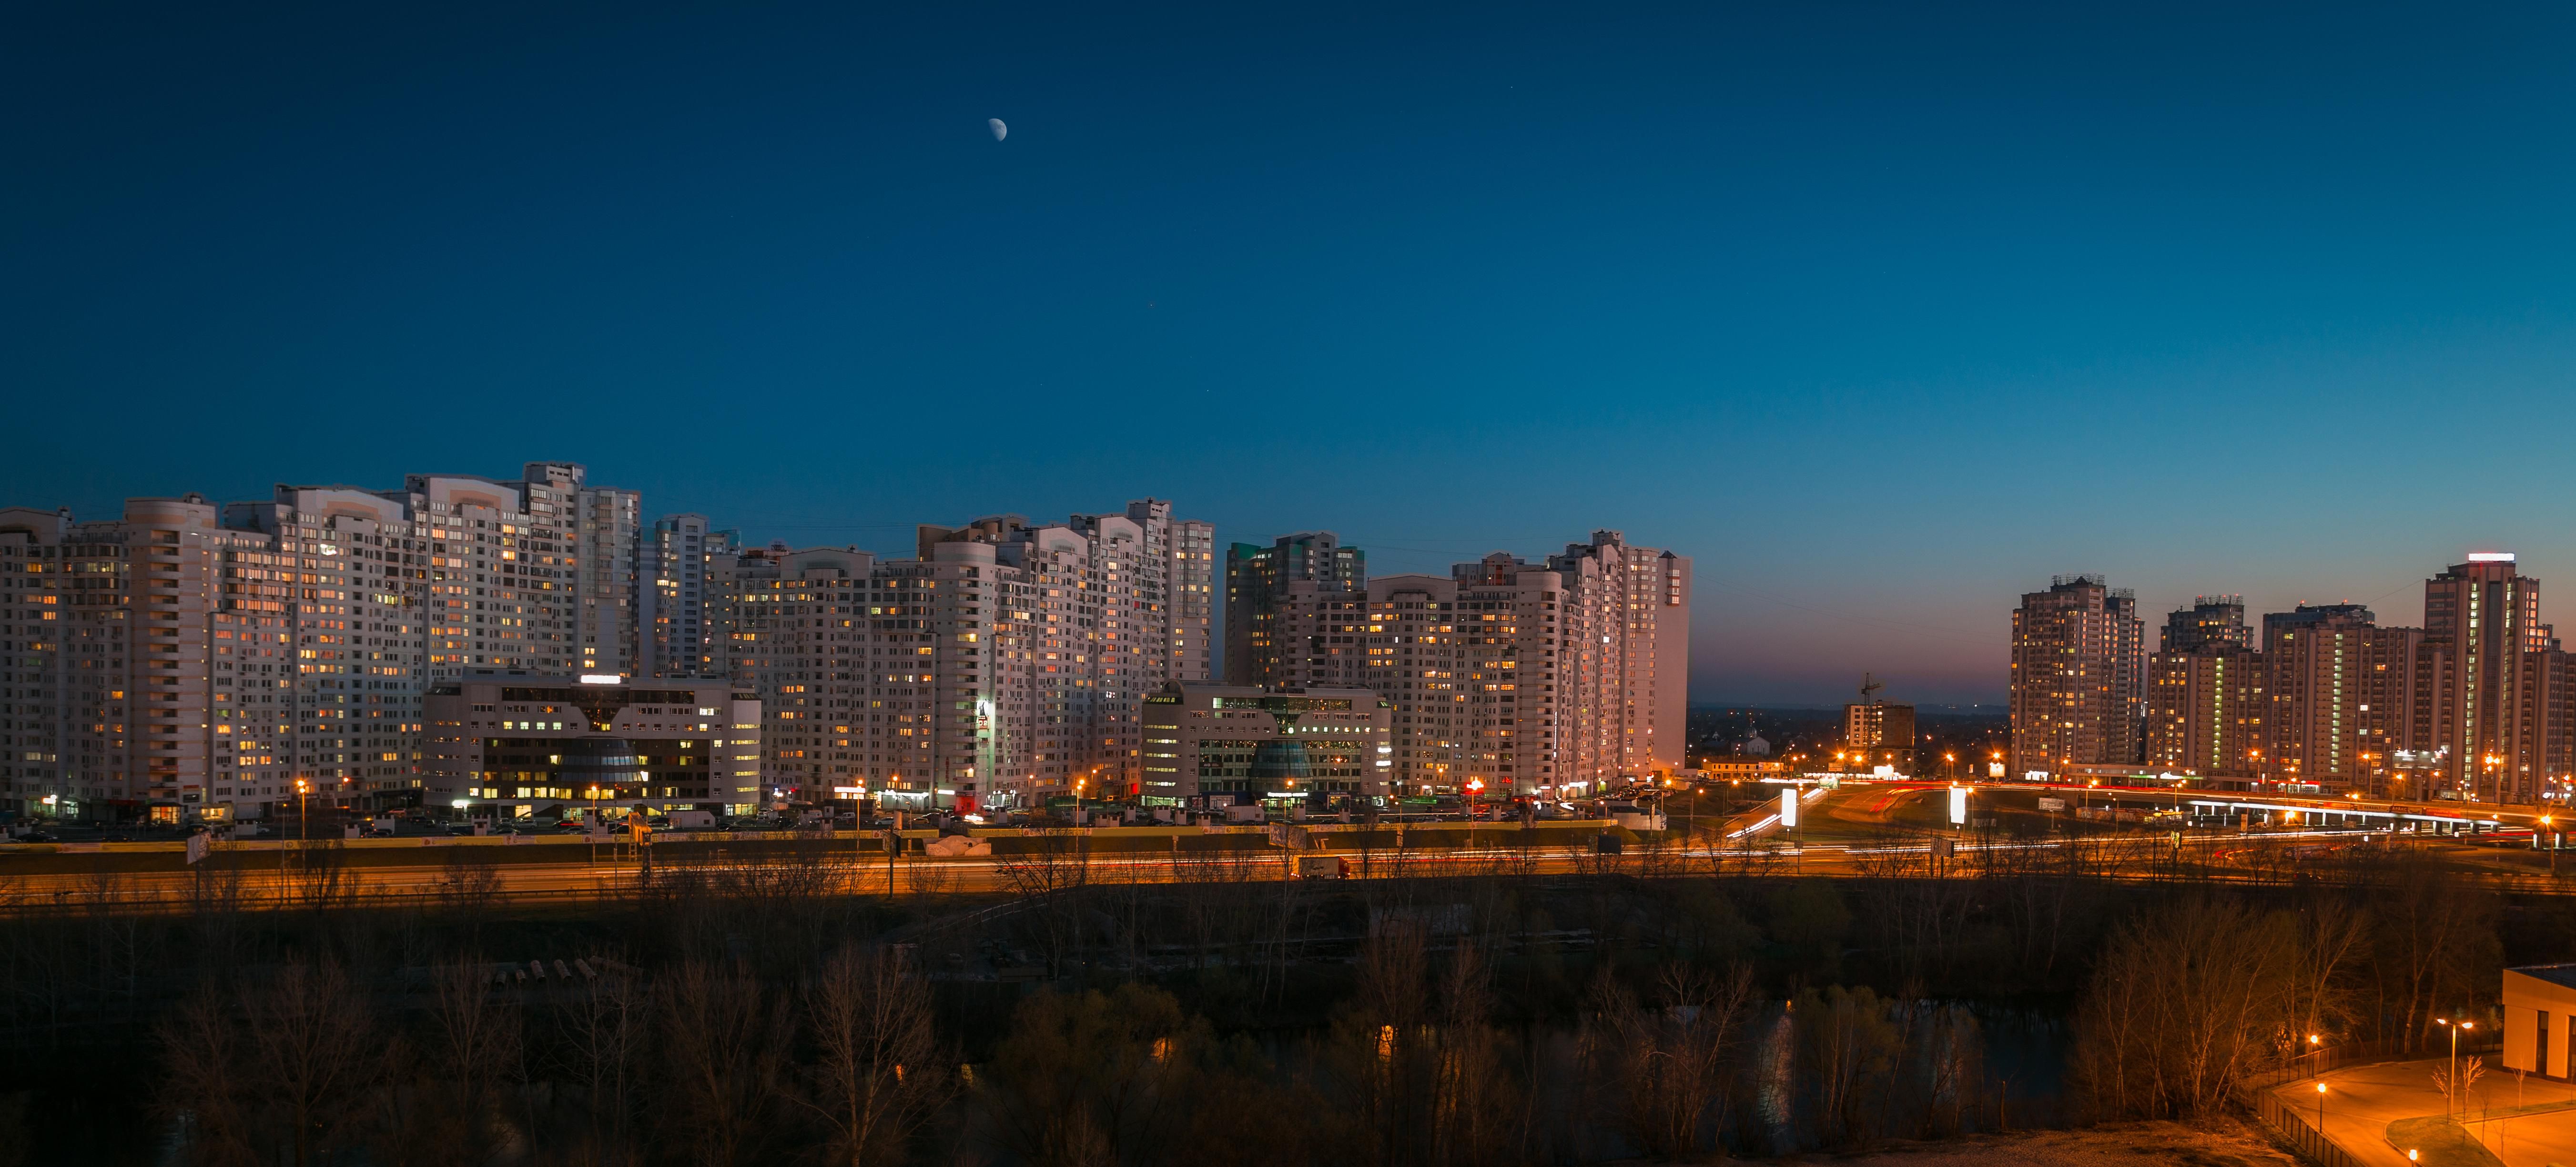 Насколько кардинально изменились цены на недвижимость в Украине за последние 5 лет